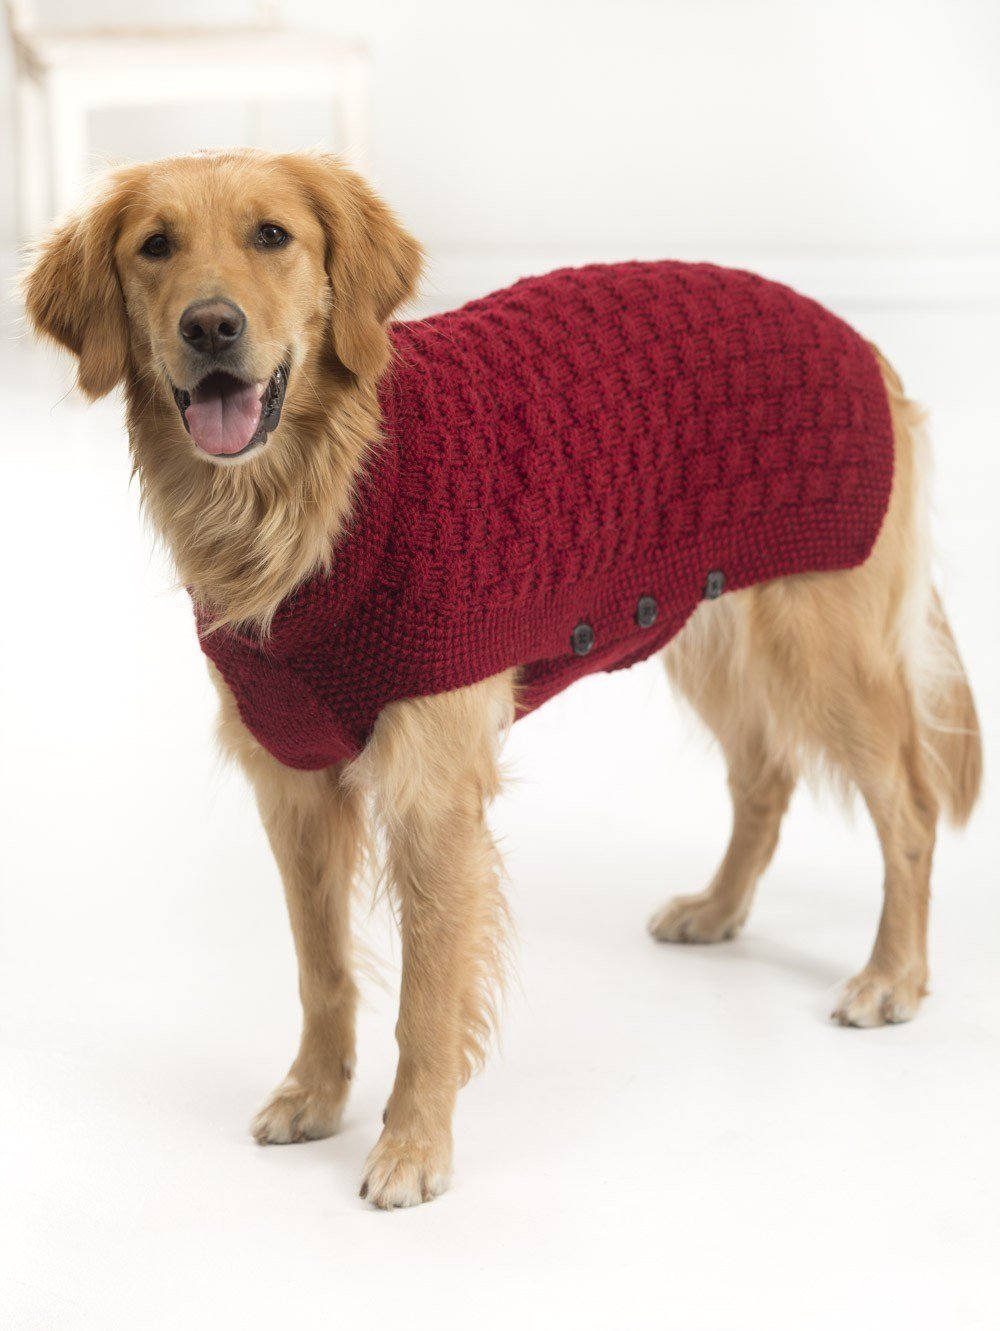 Dachshund Jumper Knitting Pattern 10 Stunning Examples Of Beautiful Fall Dog Sweaters Free Knitting